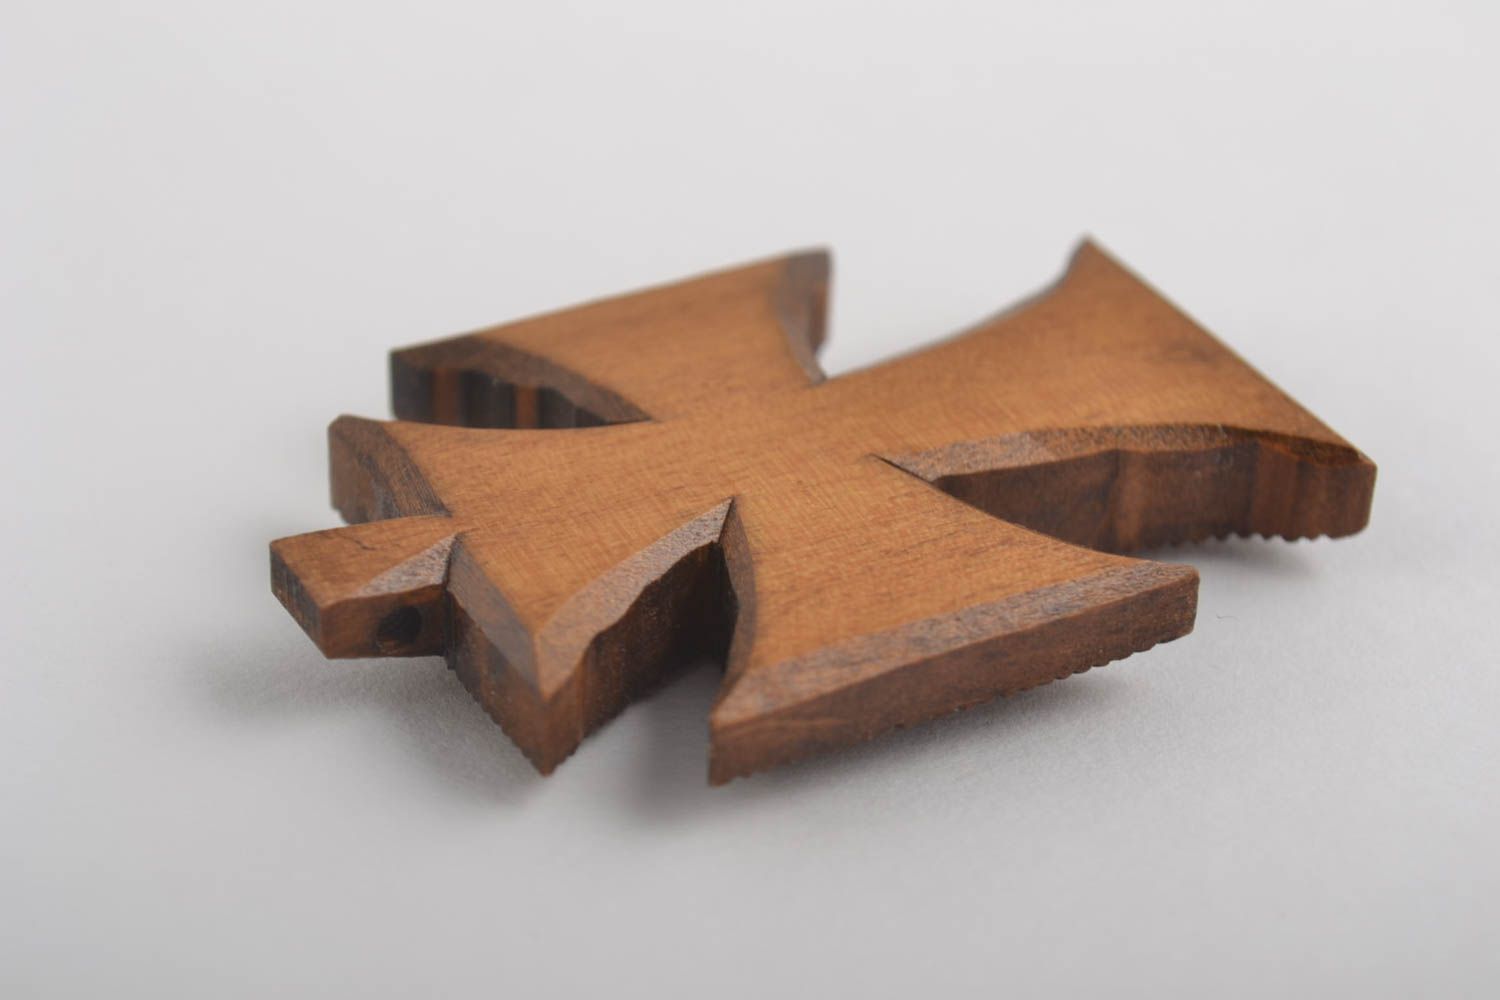 Крест ручной работы деревянный крестик нательный крестик из древесины груши фото 2